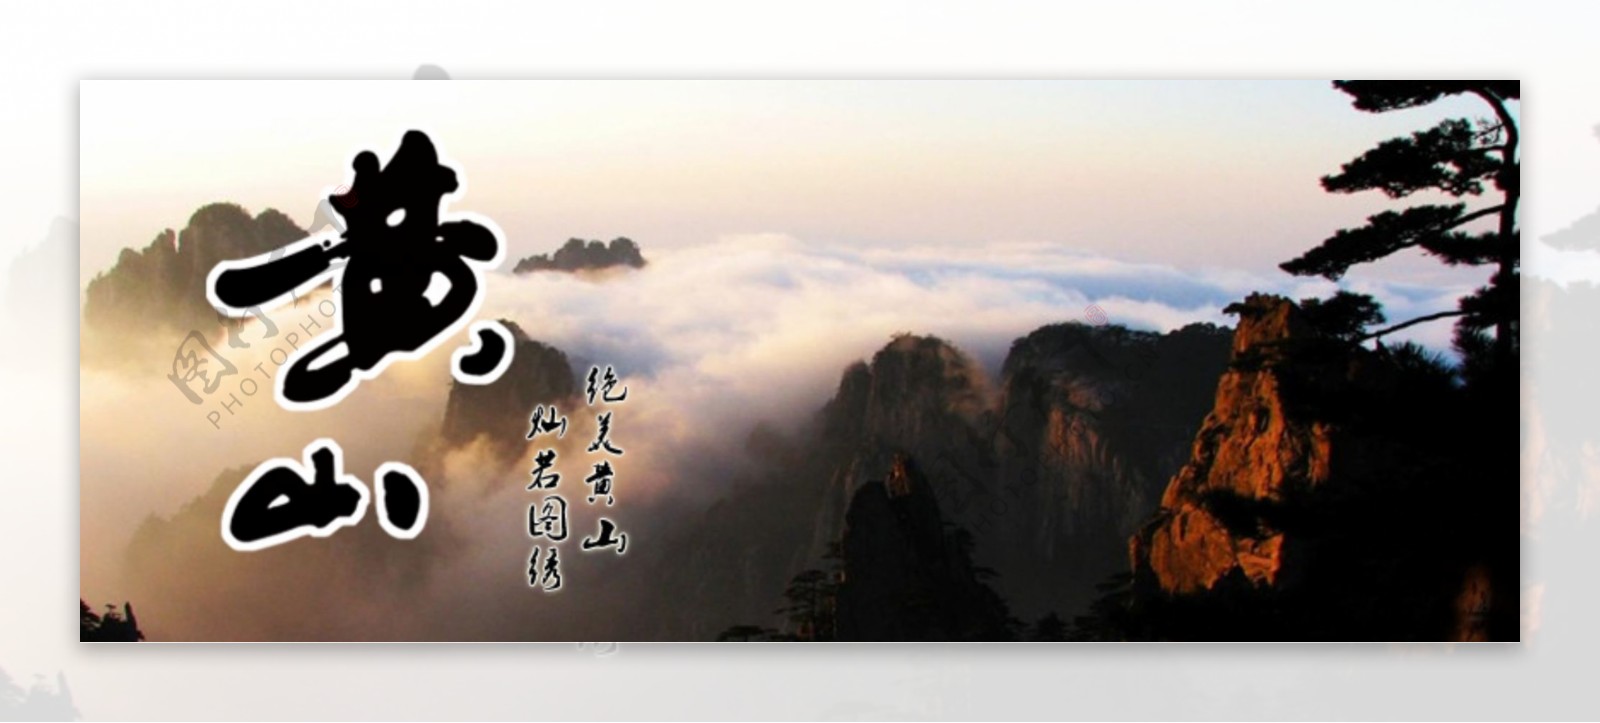 绝美黄山中国风宣传海报